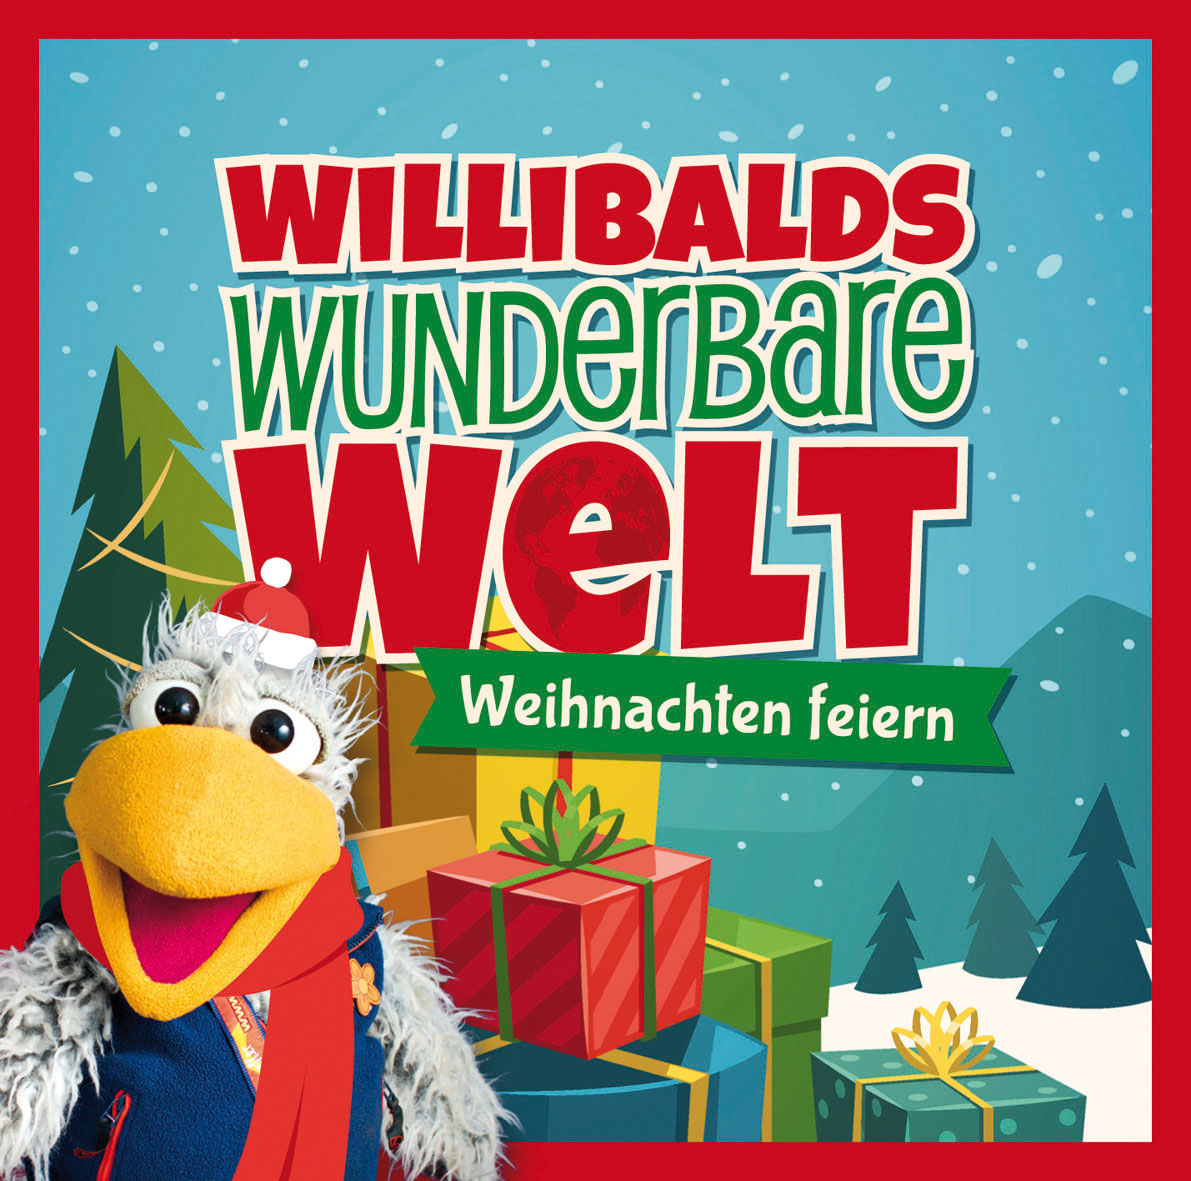 Willibalds wunderbare Welt - Weihnachten in echt - Hörspiel (CD)